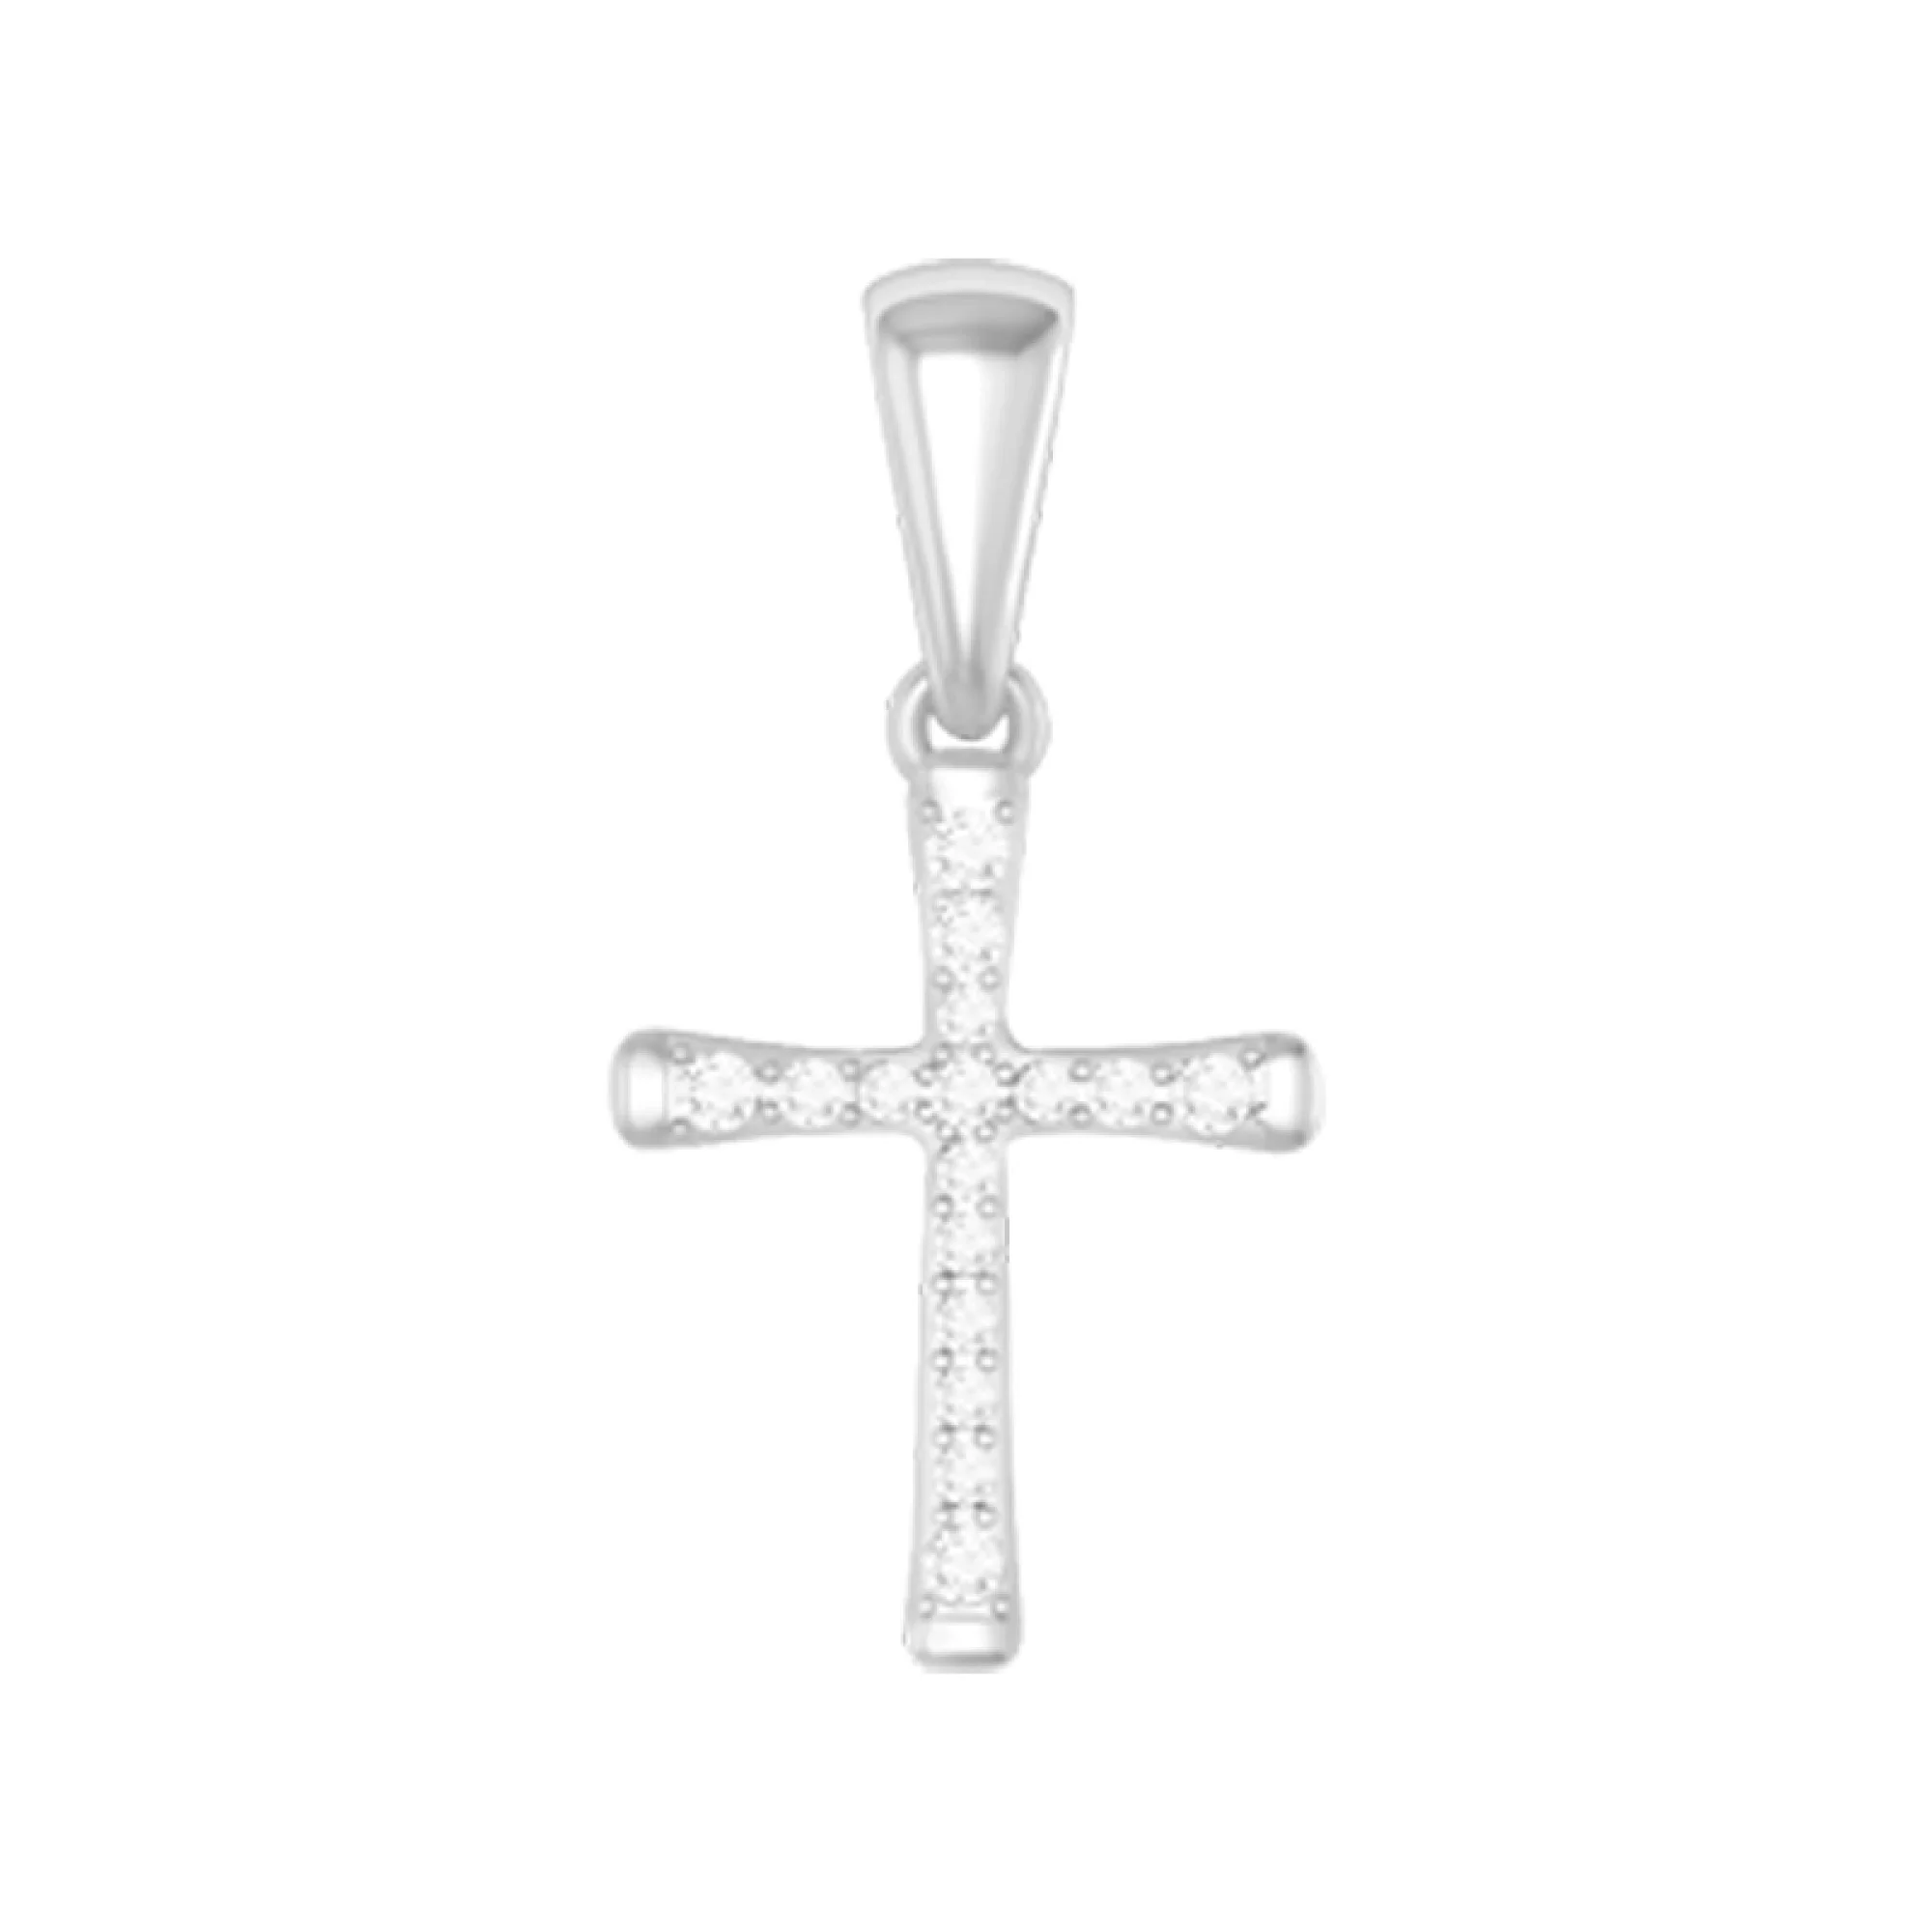 Крестик из белого золота с бриллиантами - 421615 – изображение 1